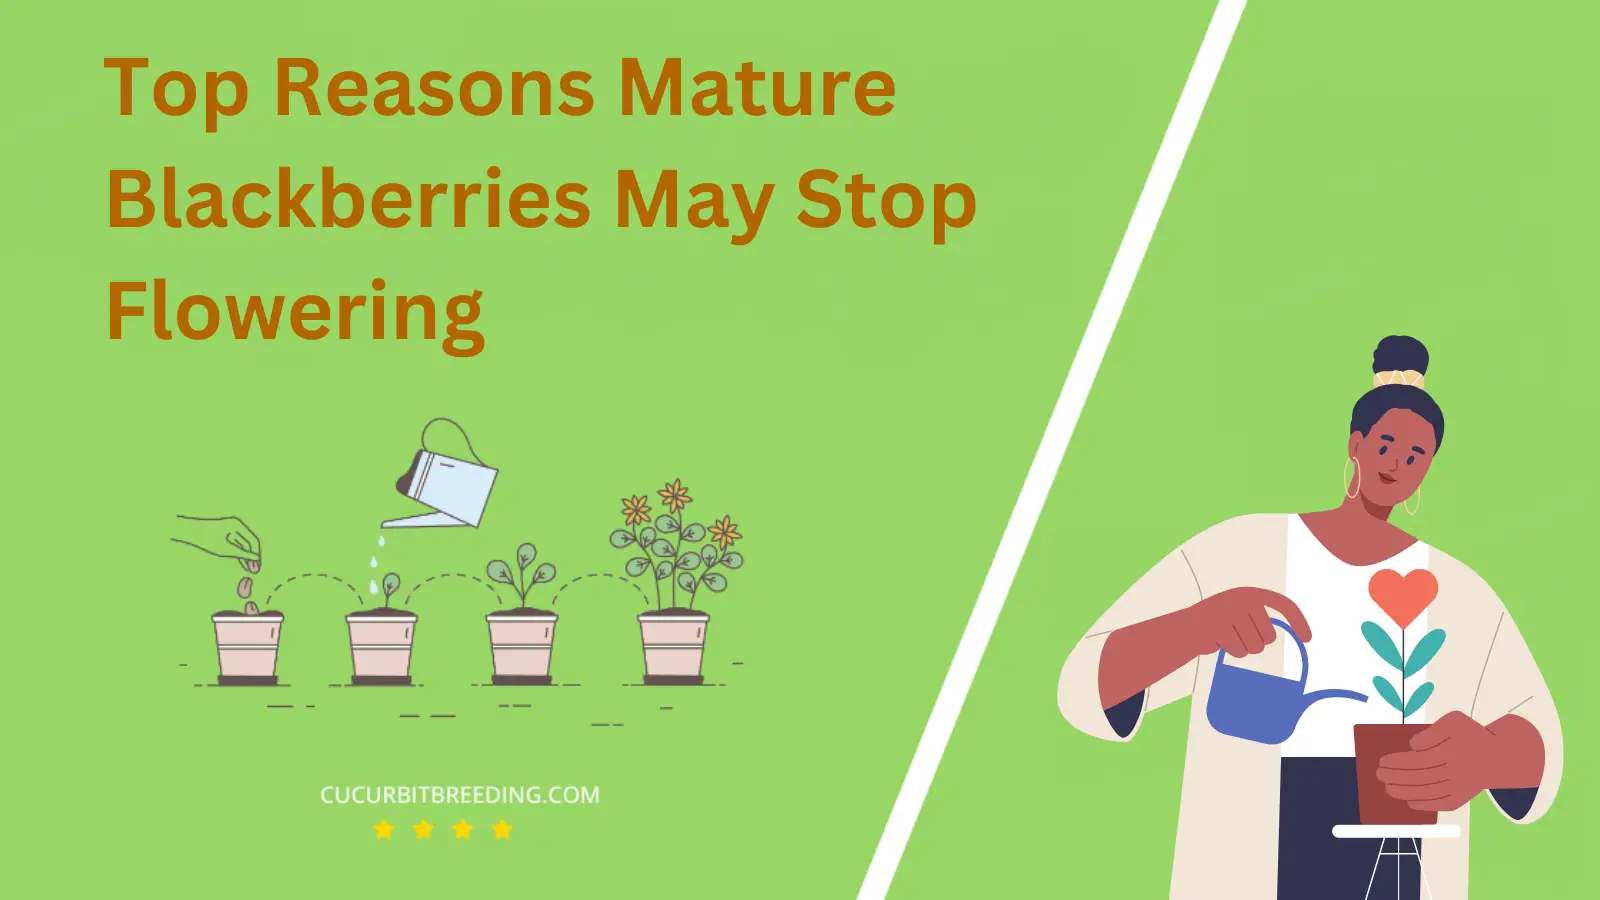 Top Reasons Mature Blackberries May Stop Flowering